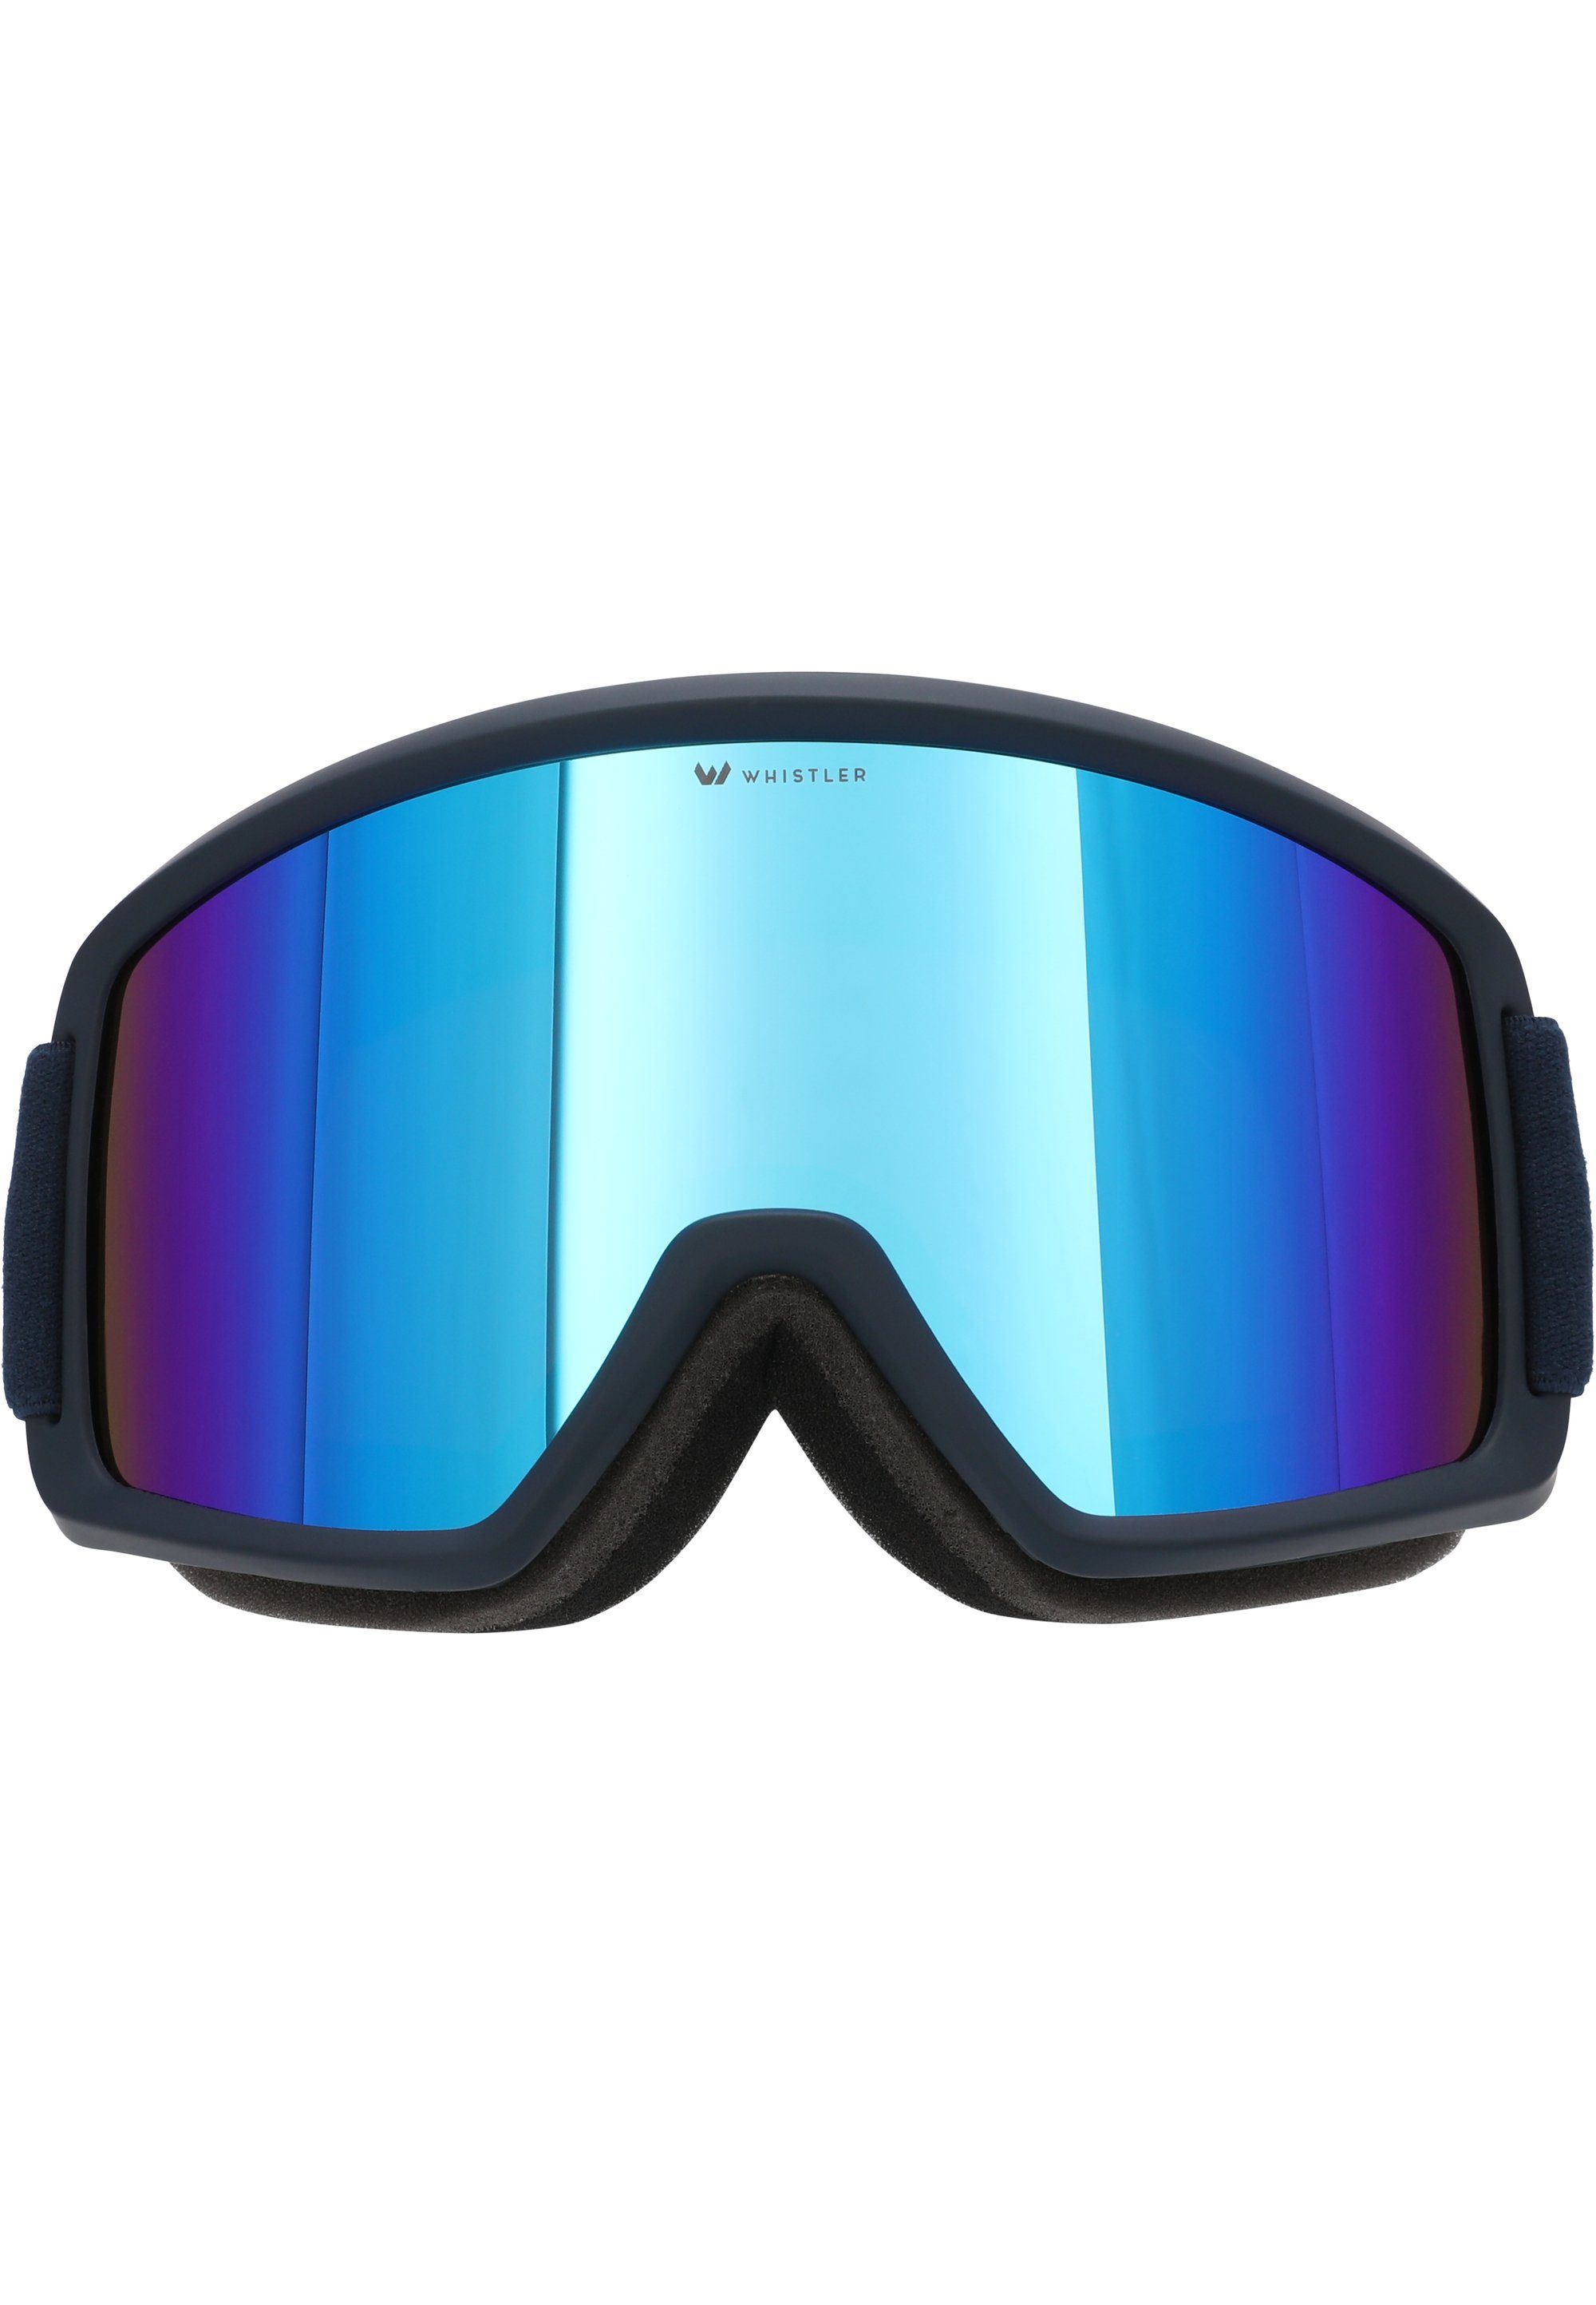 WHISTLER Skibrille Anti Fog-Funktion und UV-Schutz petrol WS5100, mit